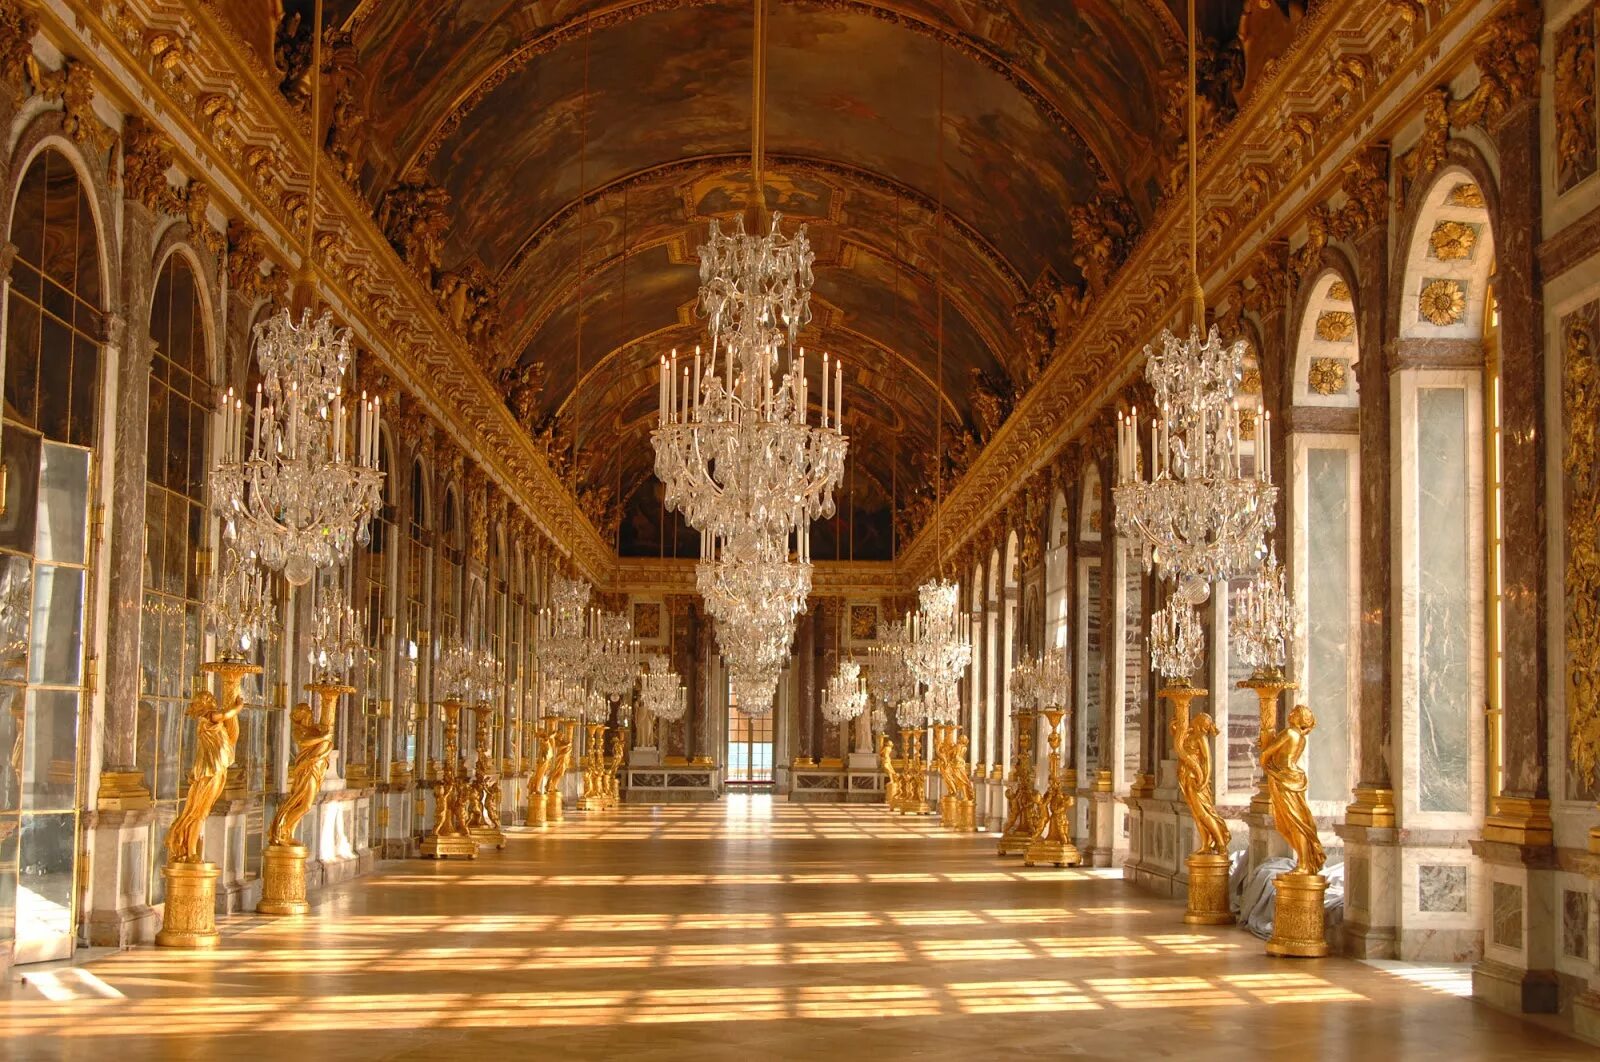 Дворцовые своды. Версальский дворец, Версаль дворец Версаля. Версальский дворец Барокко. Версальский дворец Анфилада залов. Зеркальная галерея Версальского дворца.